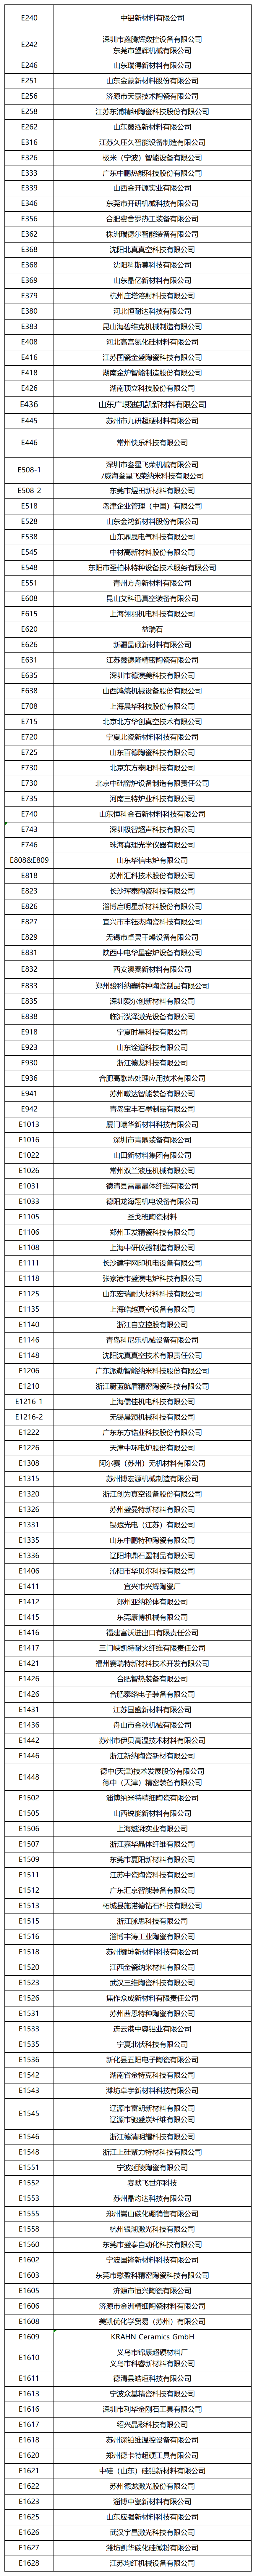 通知：2024 AM China增材制造展参观攻略、展商名单、展位图！